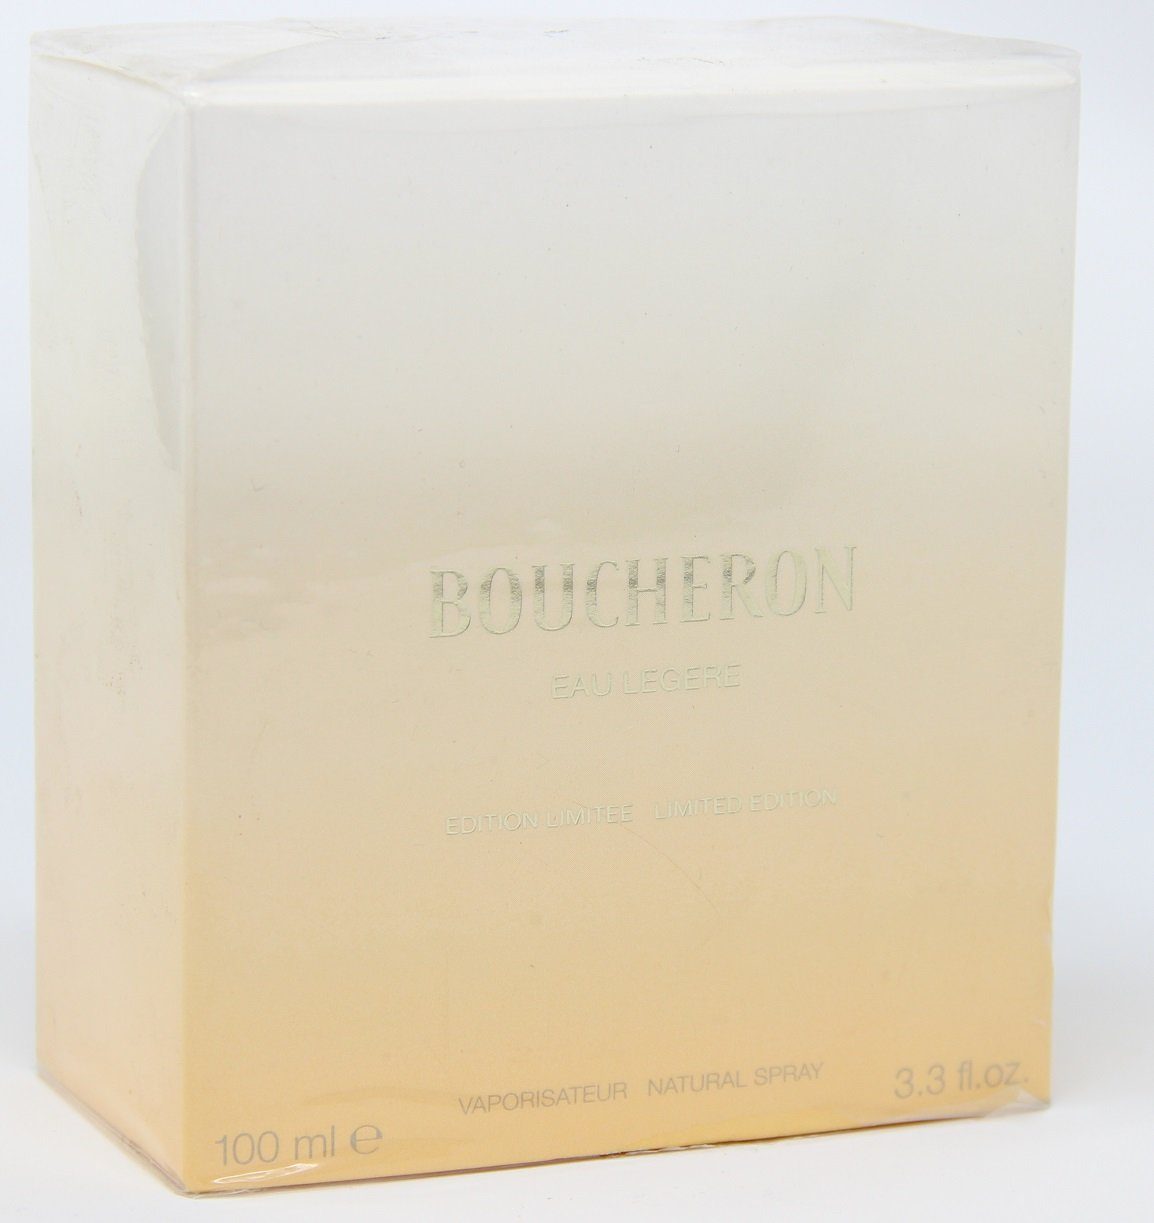 100ml Eau Eau Spray Limited Natural BOUCHERON de Parfum Legere Edition Boucheron